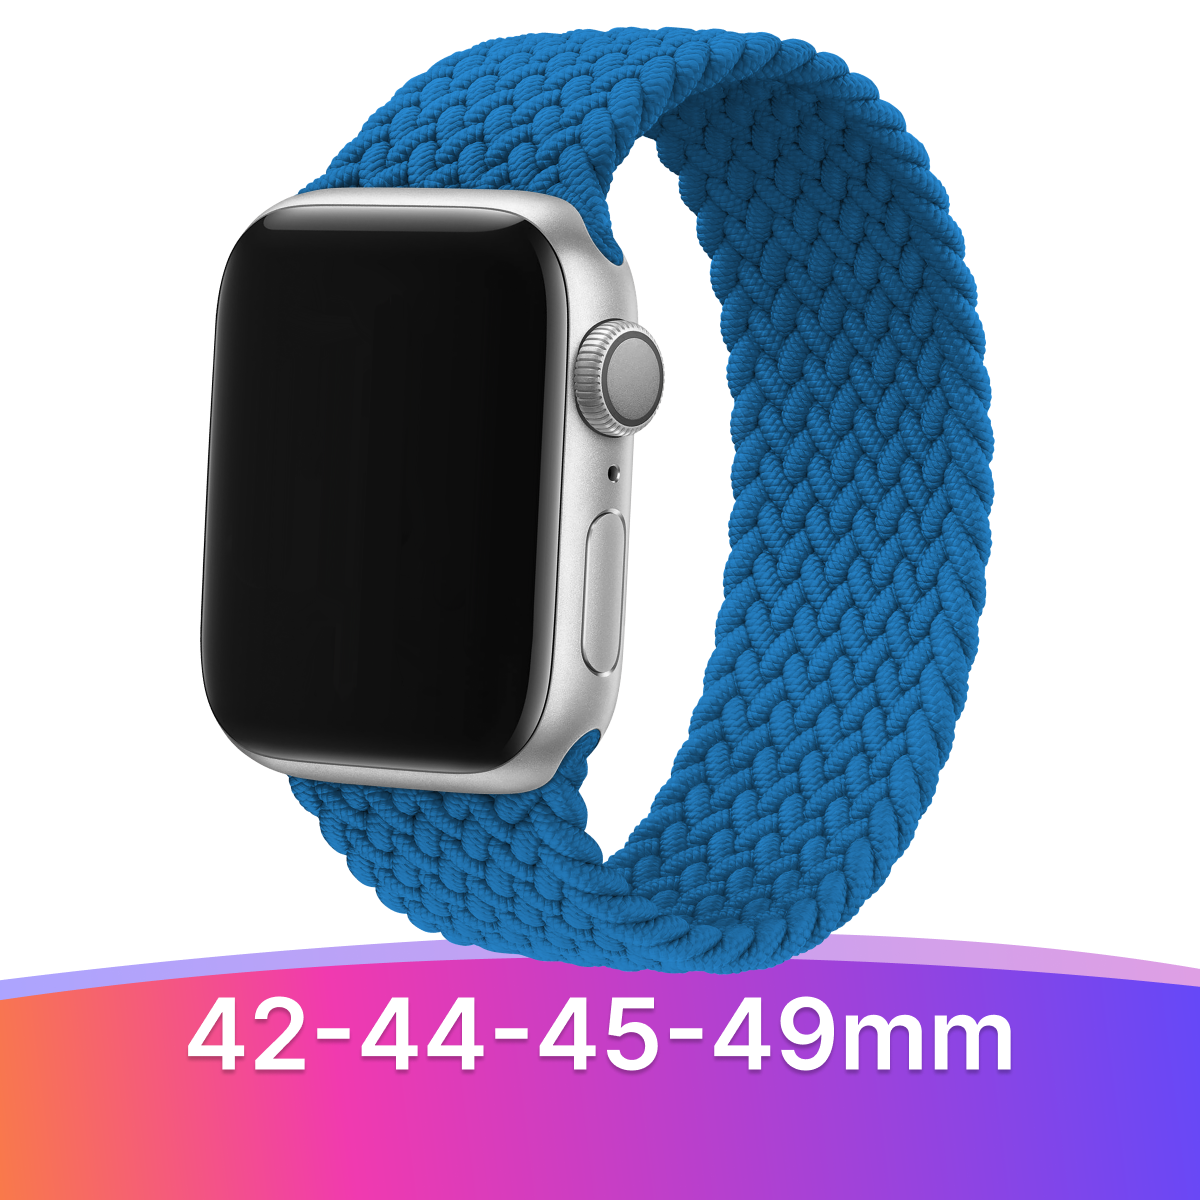 Нейлоновый плетеный ремешок для Apple Watch 1-9, SE, Ultra, 42-44-45-49 mm / Тканевый монобраслет (16 см) на часы Эпл Вотч 1-9, СЕ, Ультра, 42-44-45-49 мм / Синий